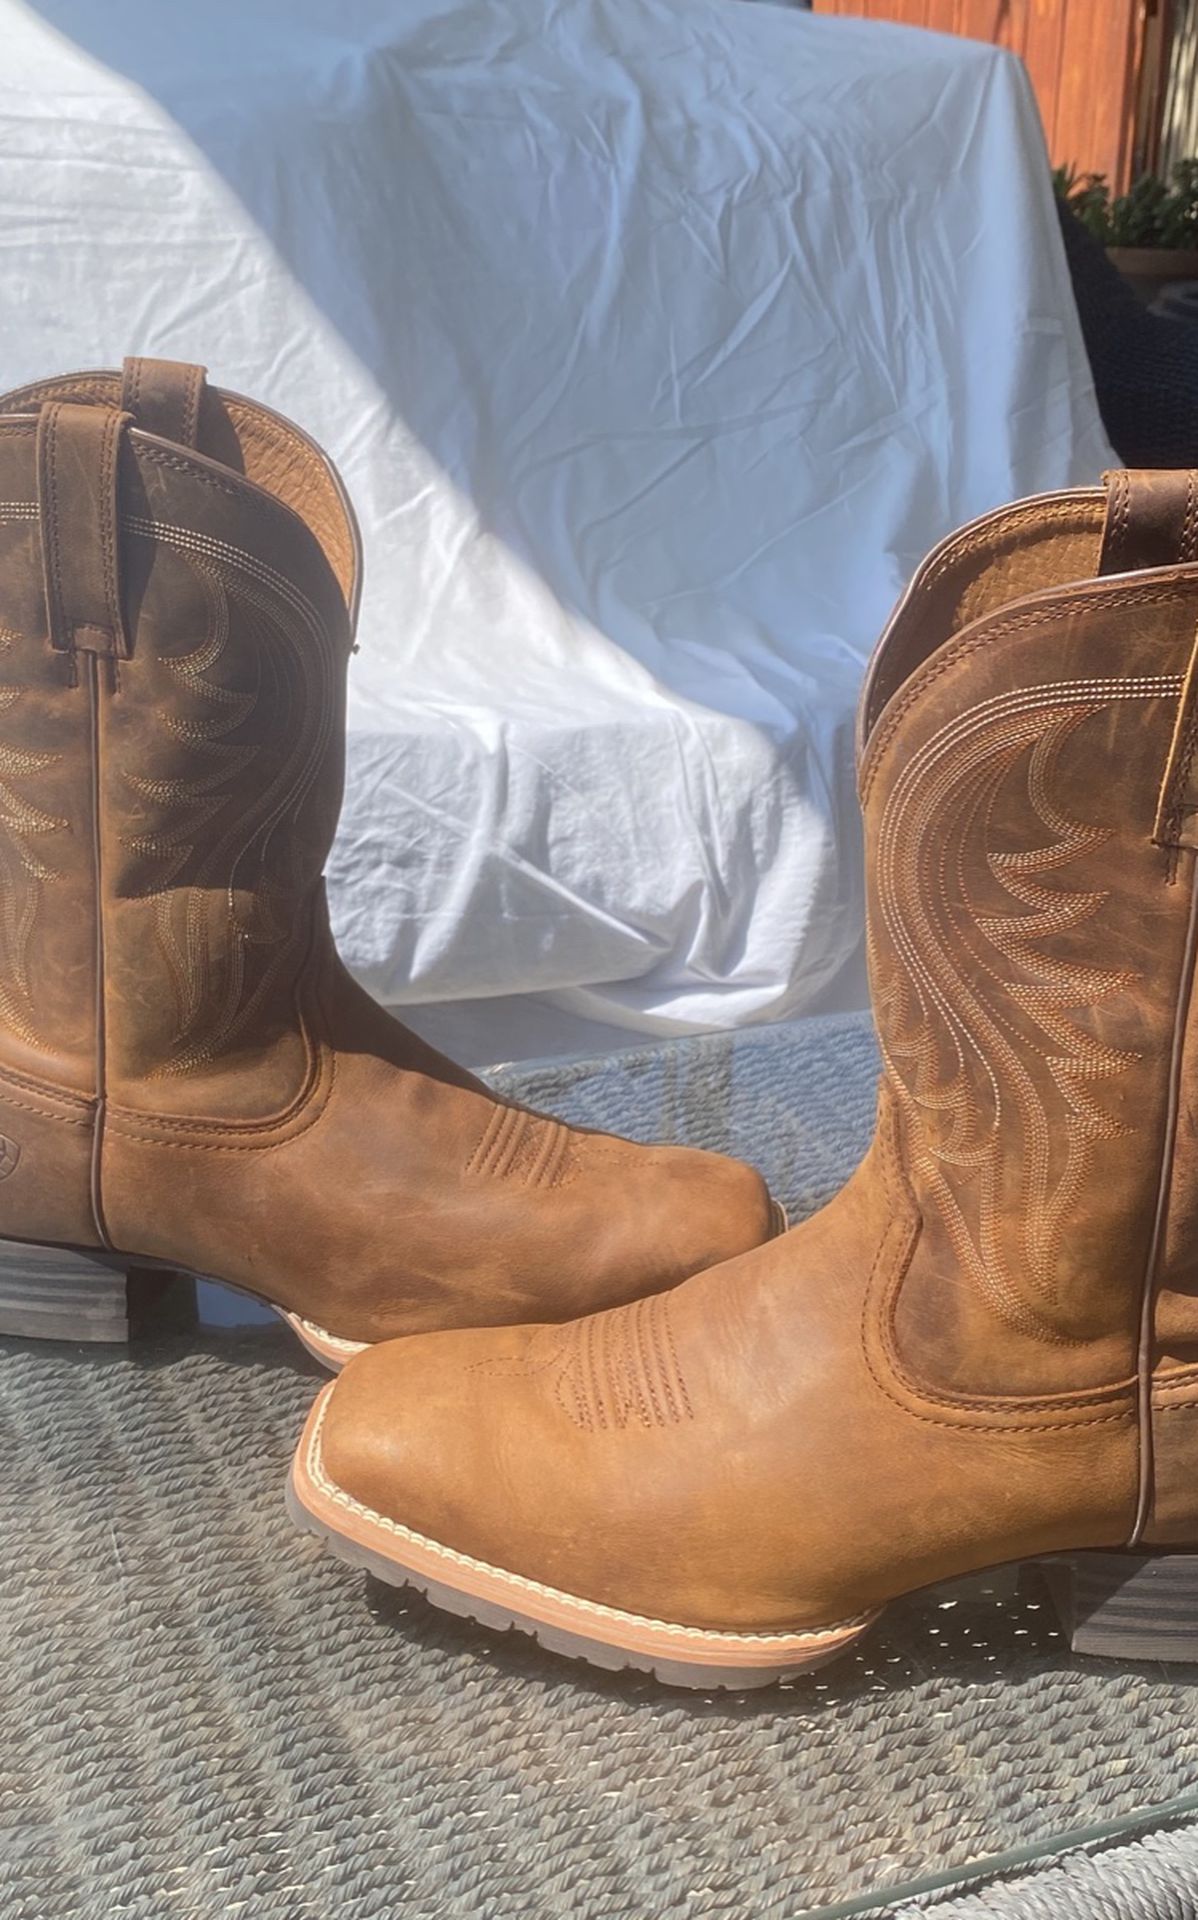 Men’s Ariat Cowboy Boots 